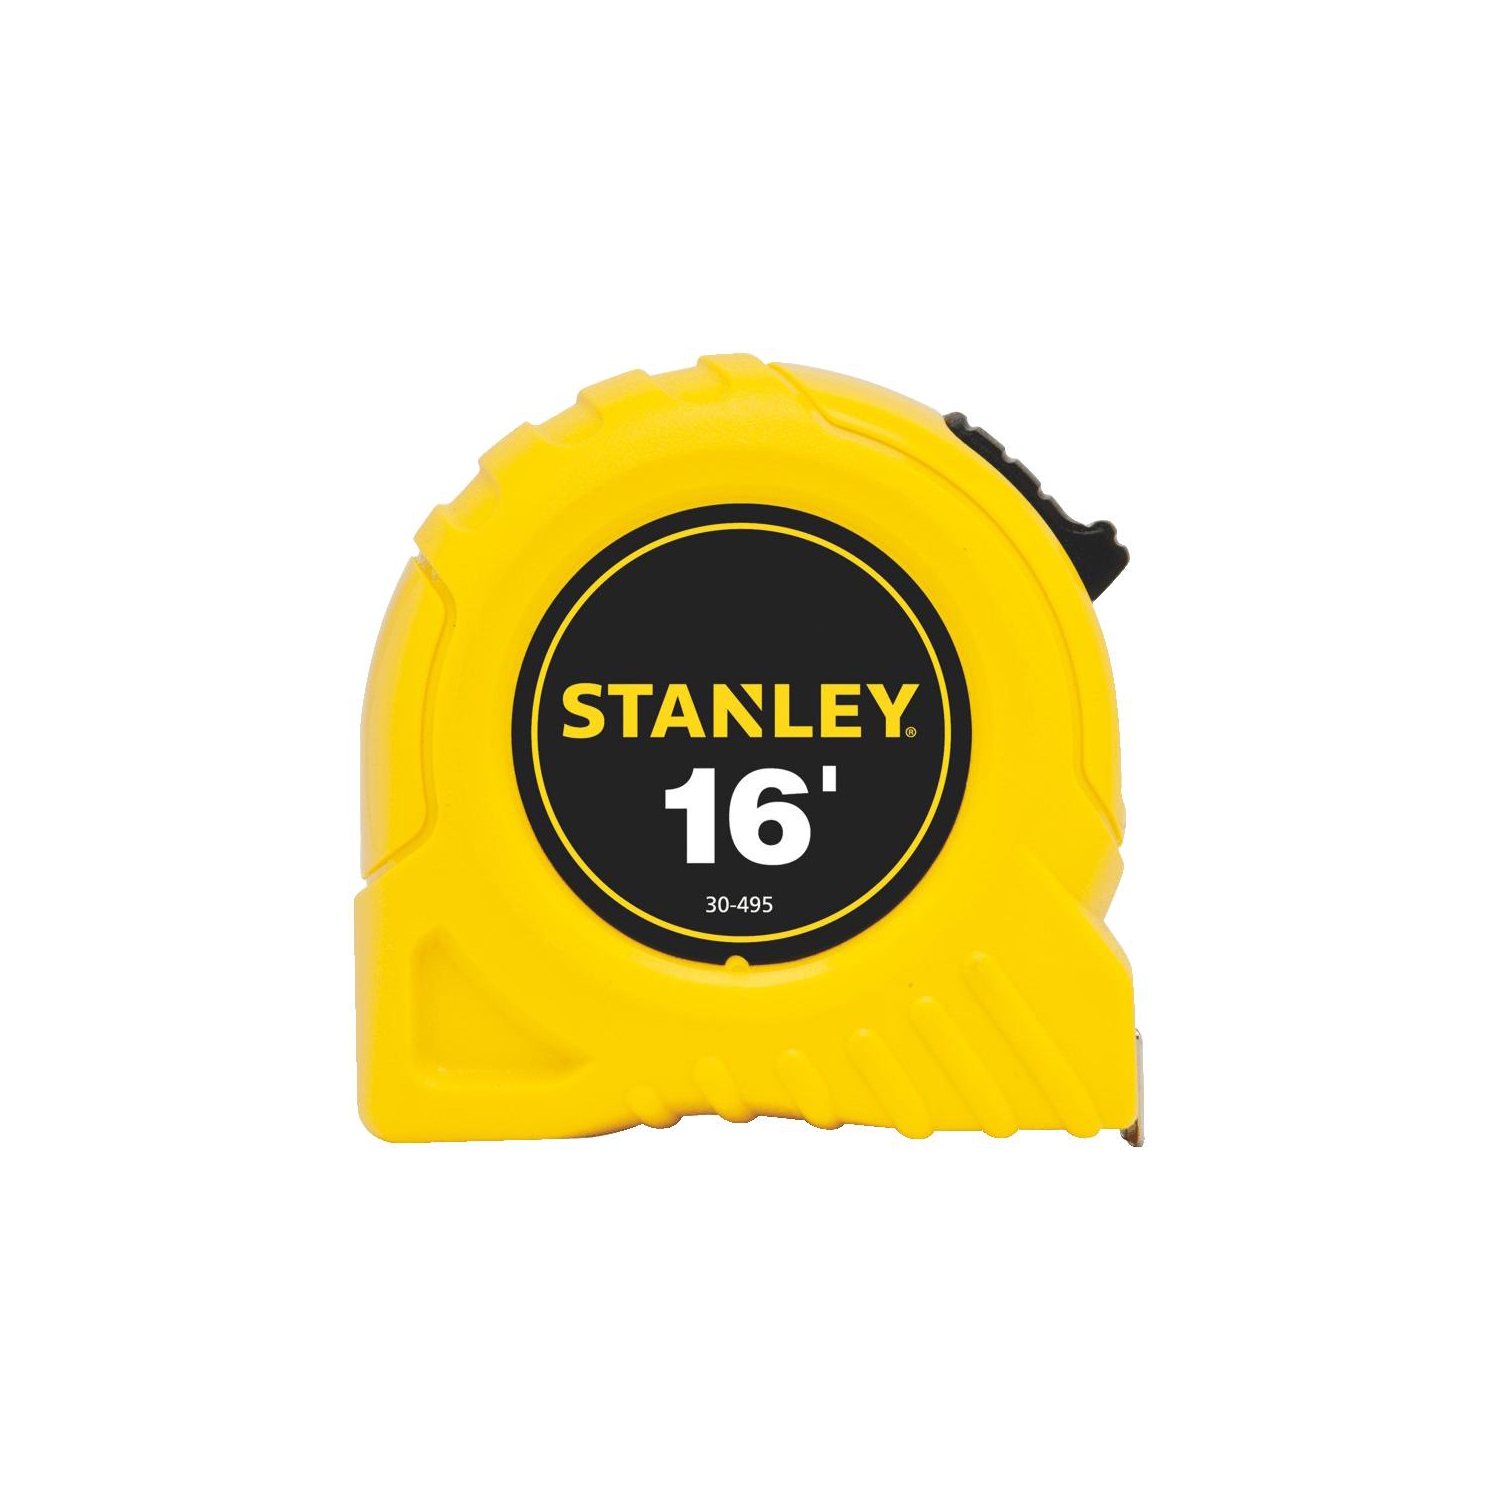 Stanley 680-30-495 30495 Tape Rule 16Ftx3-4